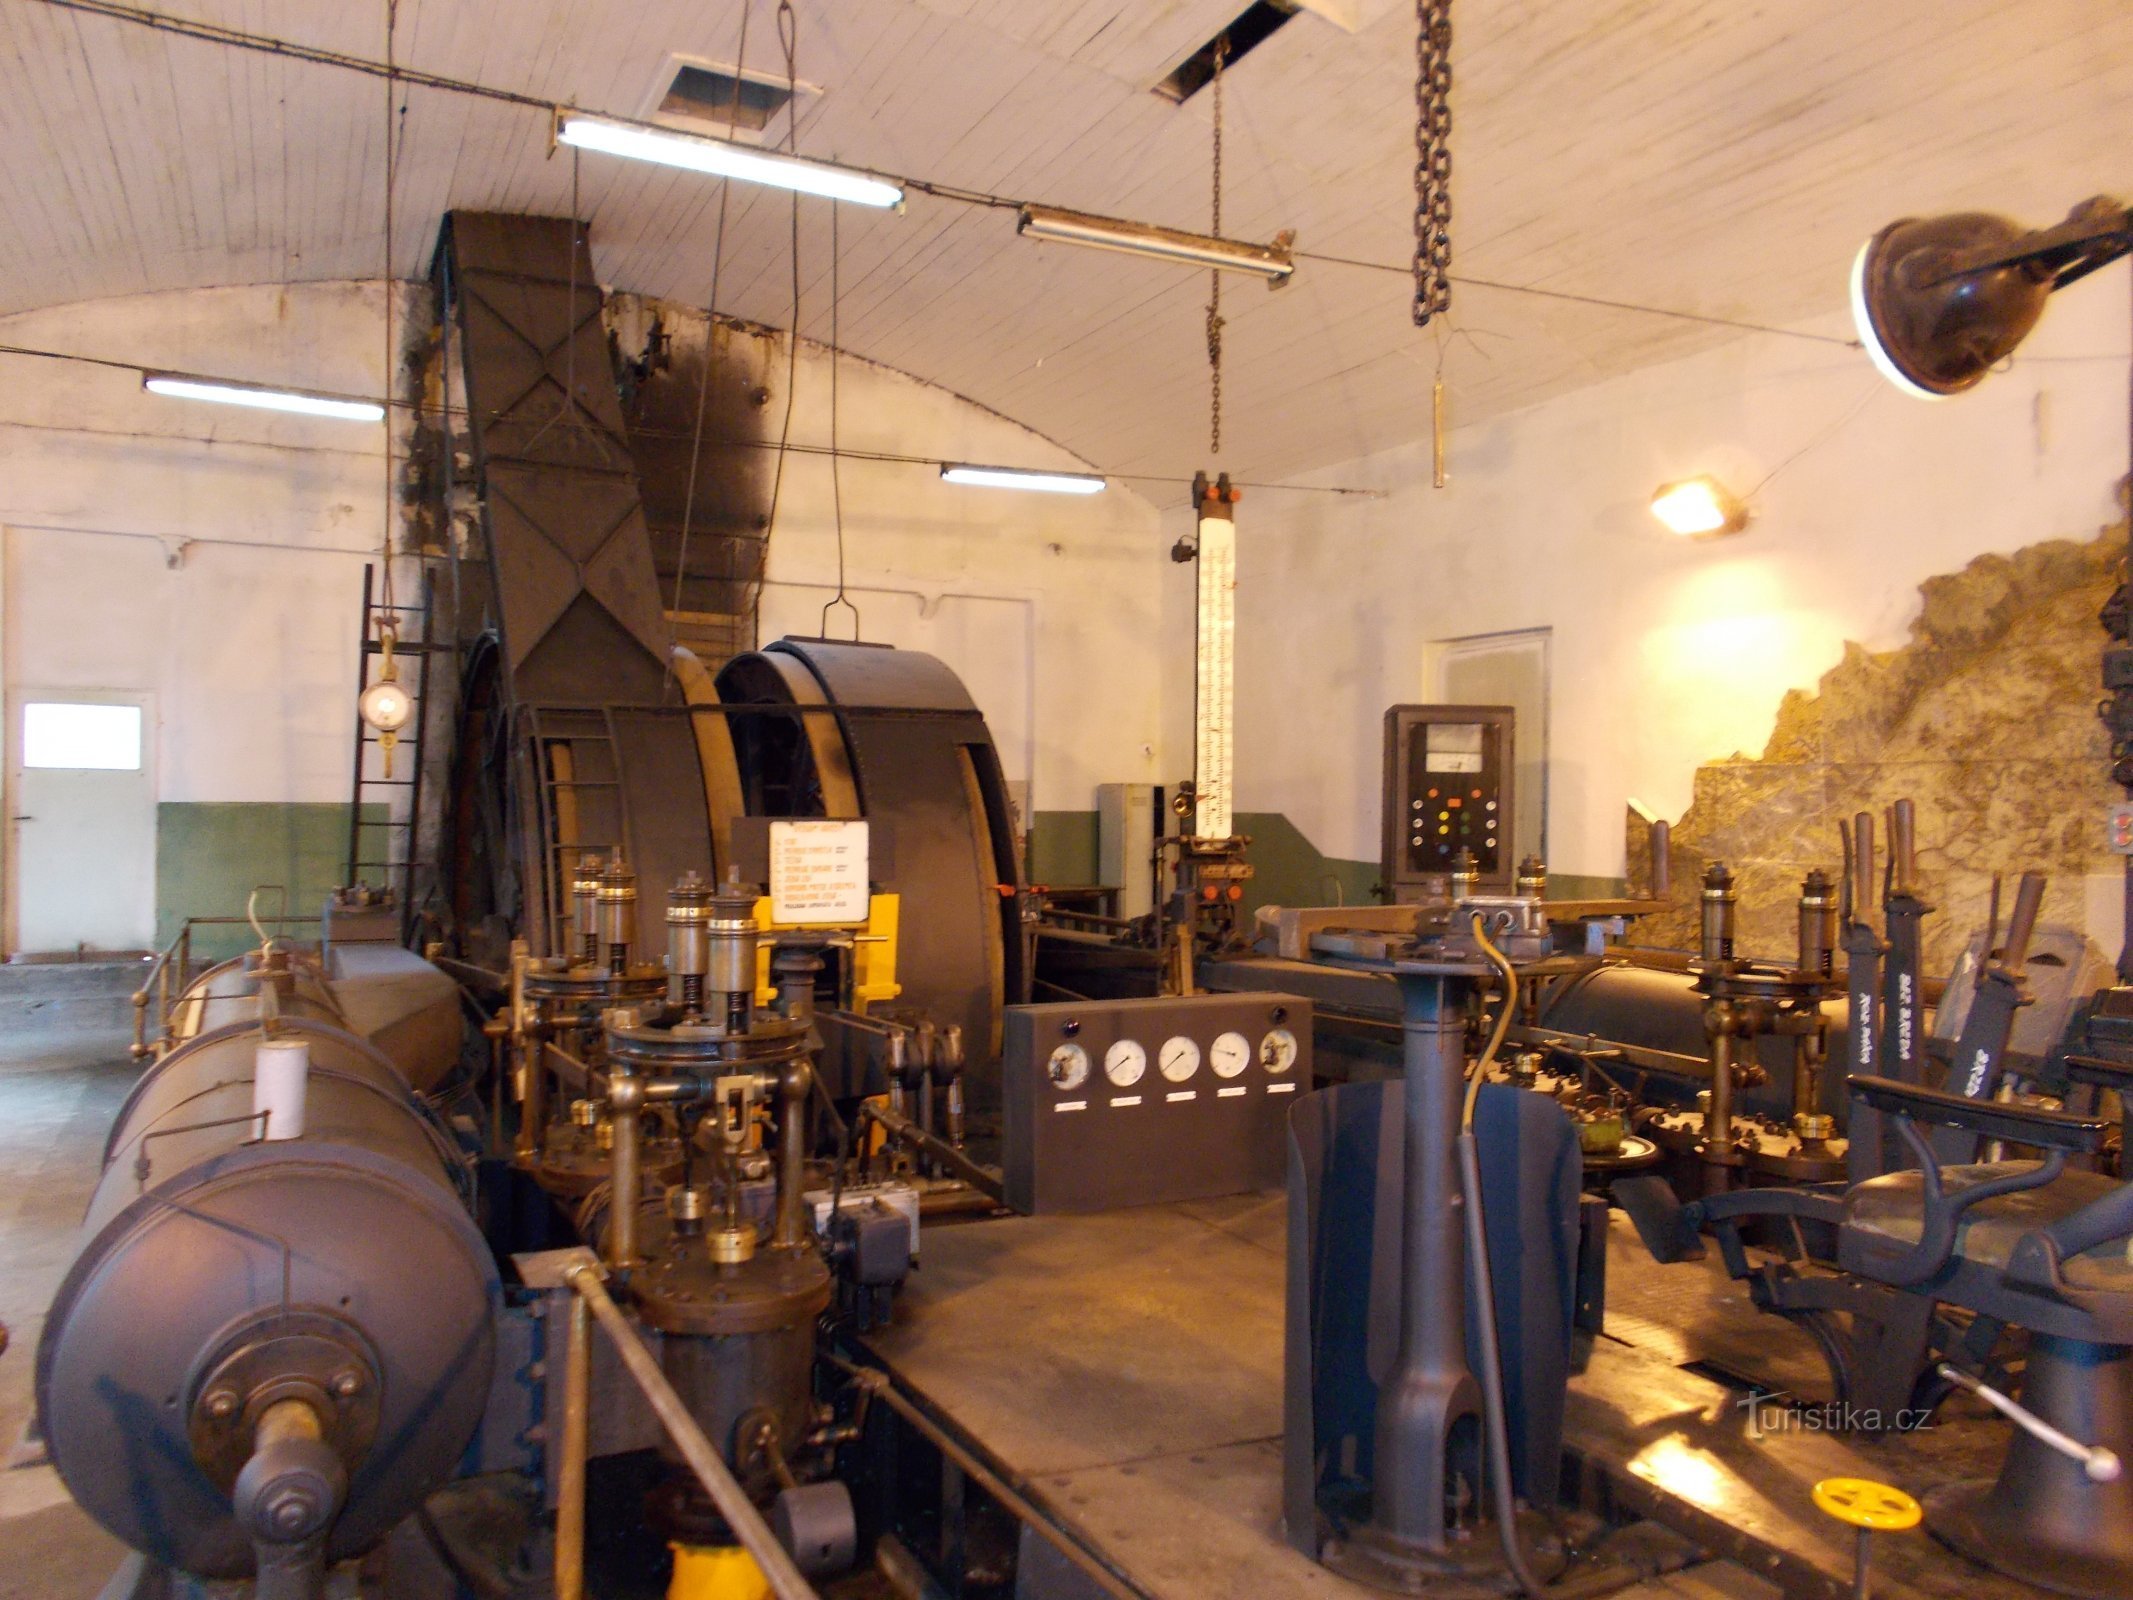 Musée technique de Podkrušnohorské - machine d'extraction à vapeur